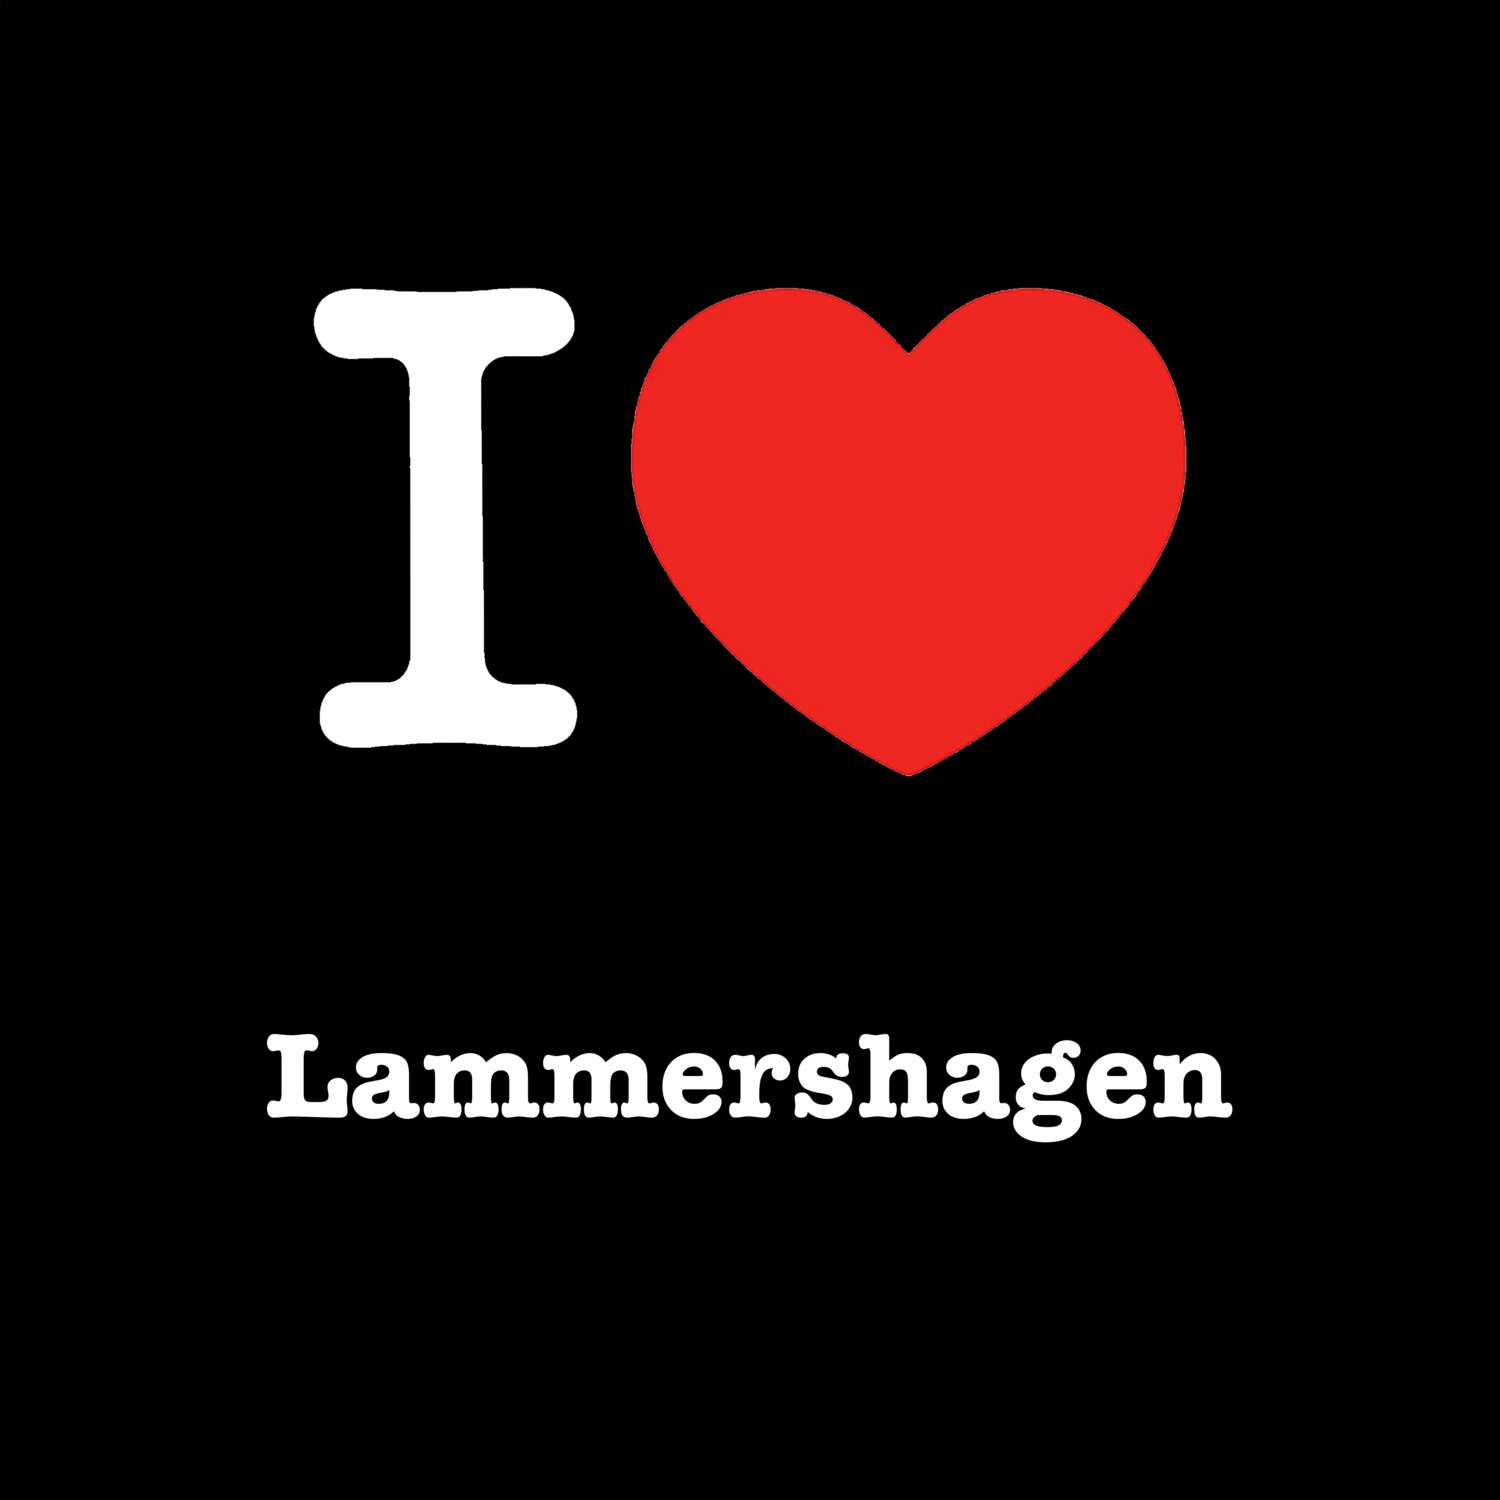 Lammershagen T-Shirt »I love«